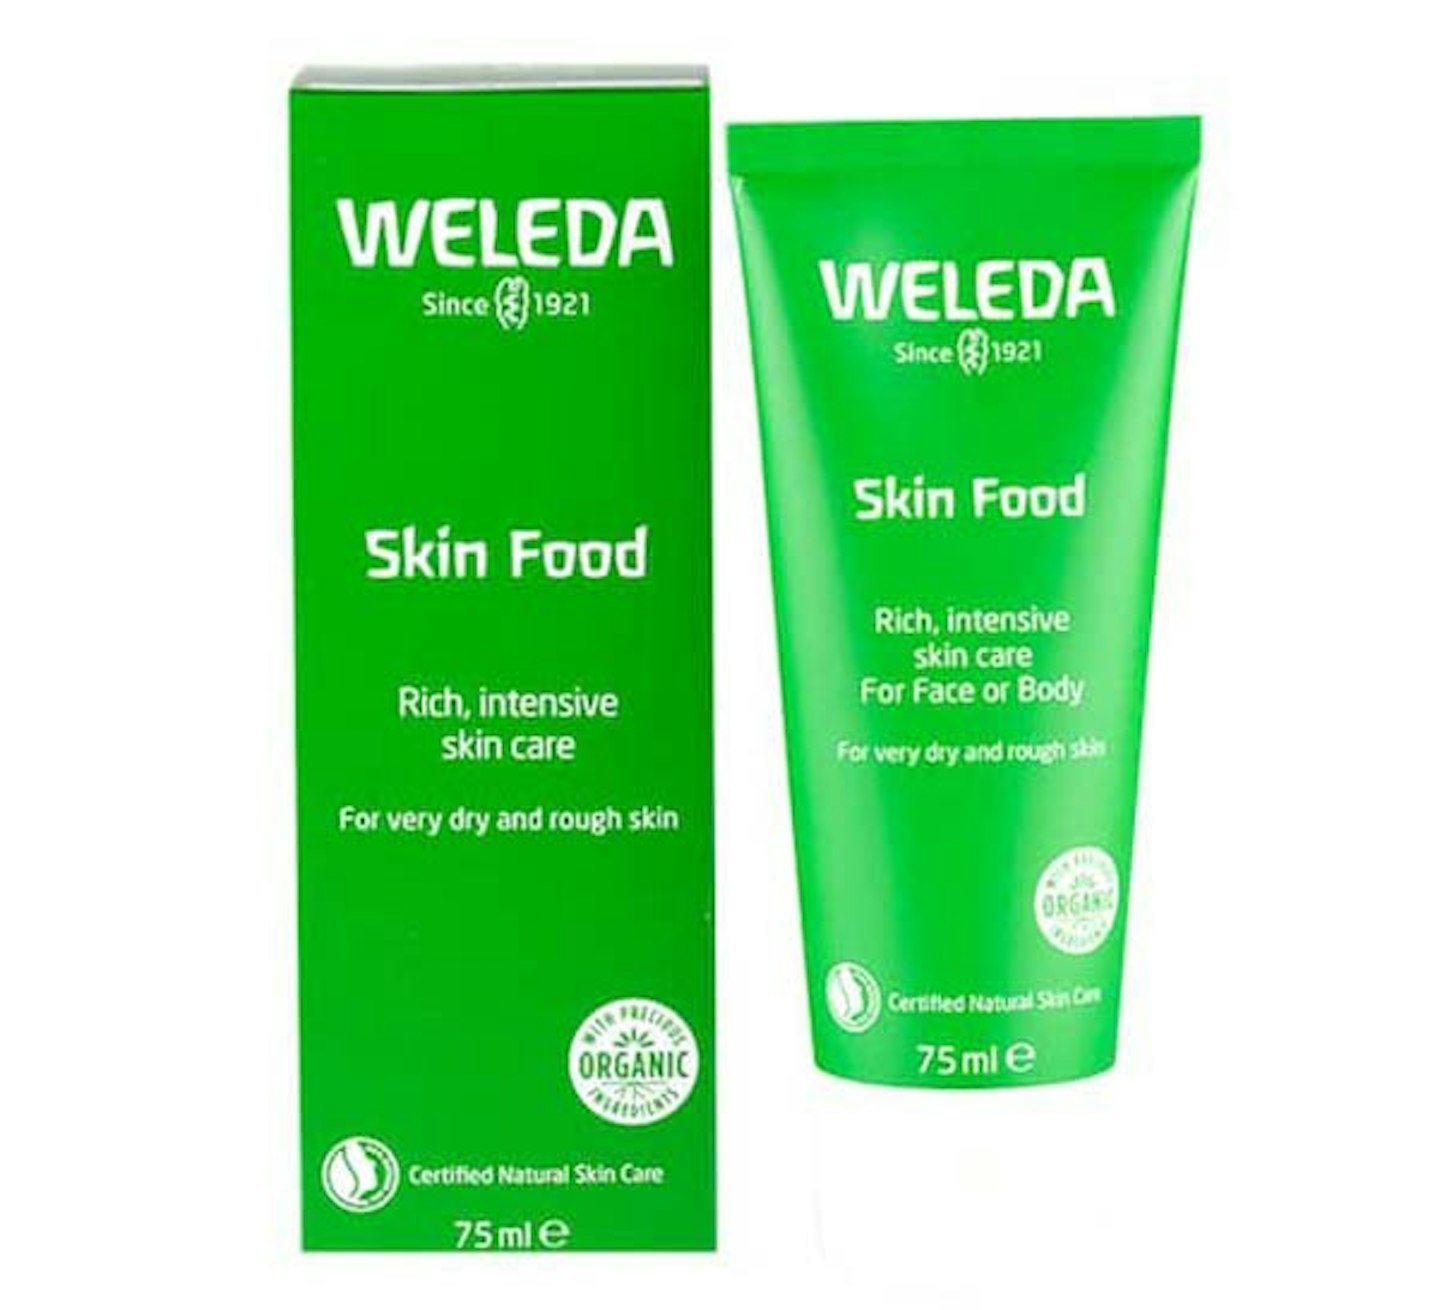 Weleda Skin Food Light - Clean, Natural Skin Moisturizer Lotion